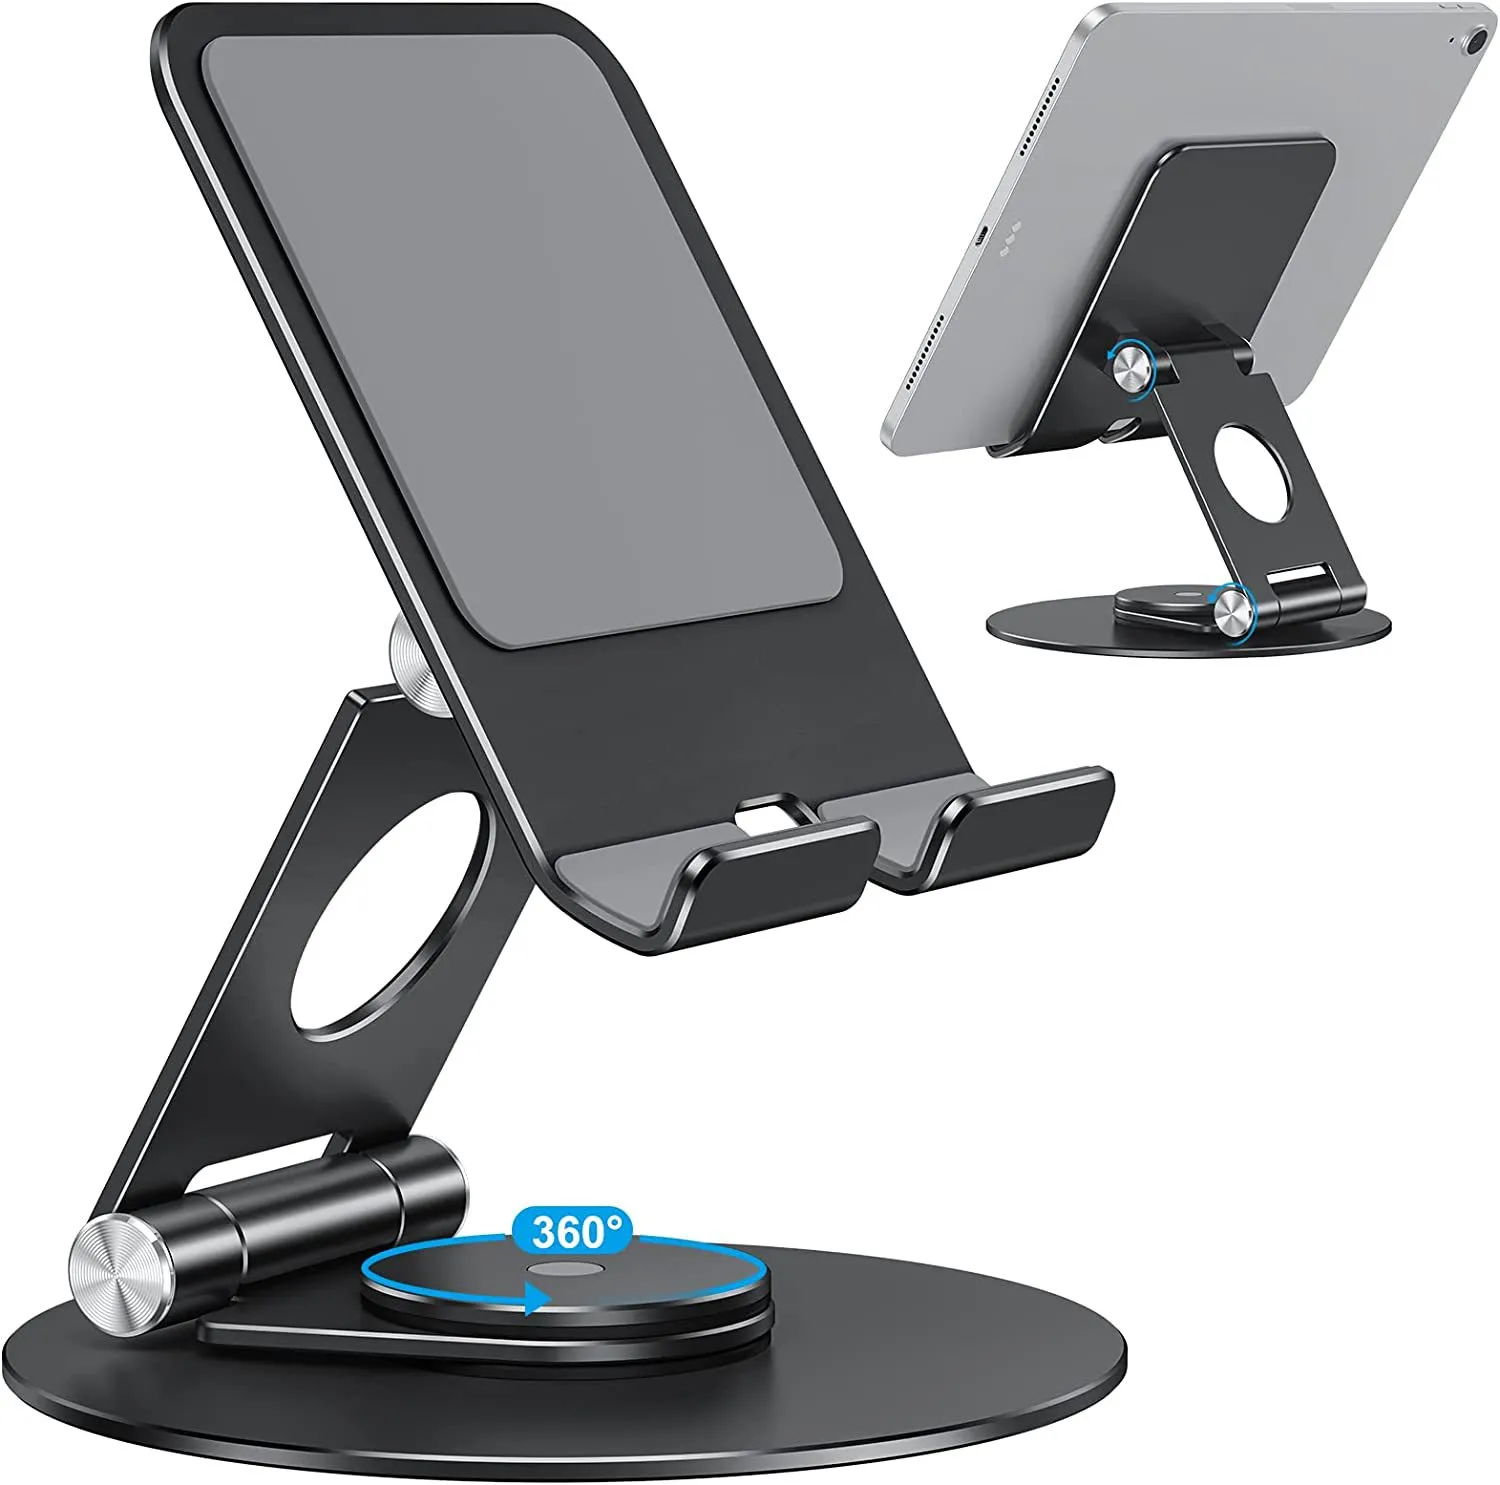 Desktop-Tablet-Ständer, drehbarer Aluminium-Ständer für iPad 3, 4, 2, Mini-Handy-Ständer